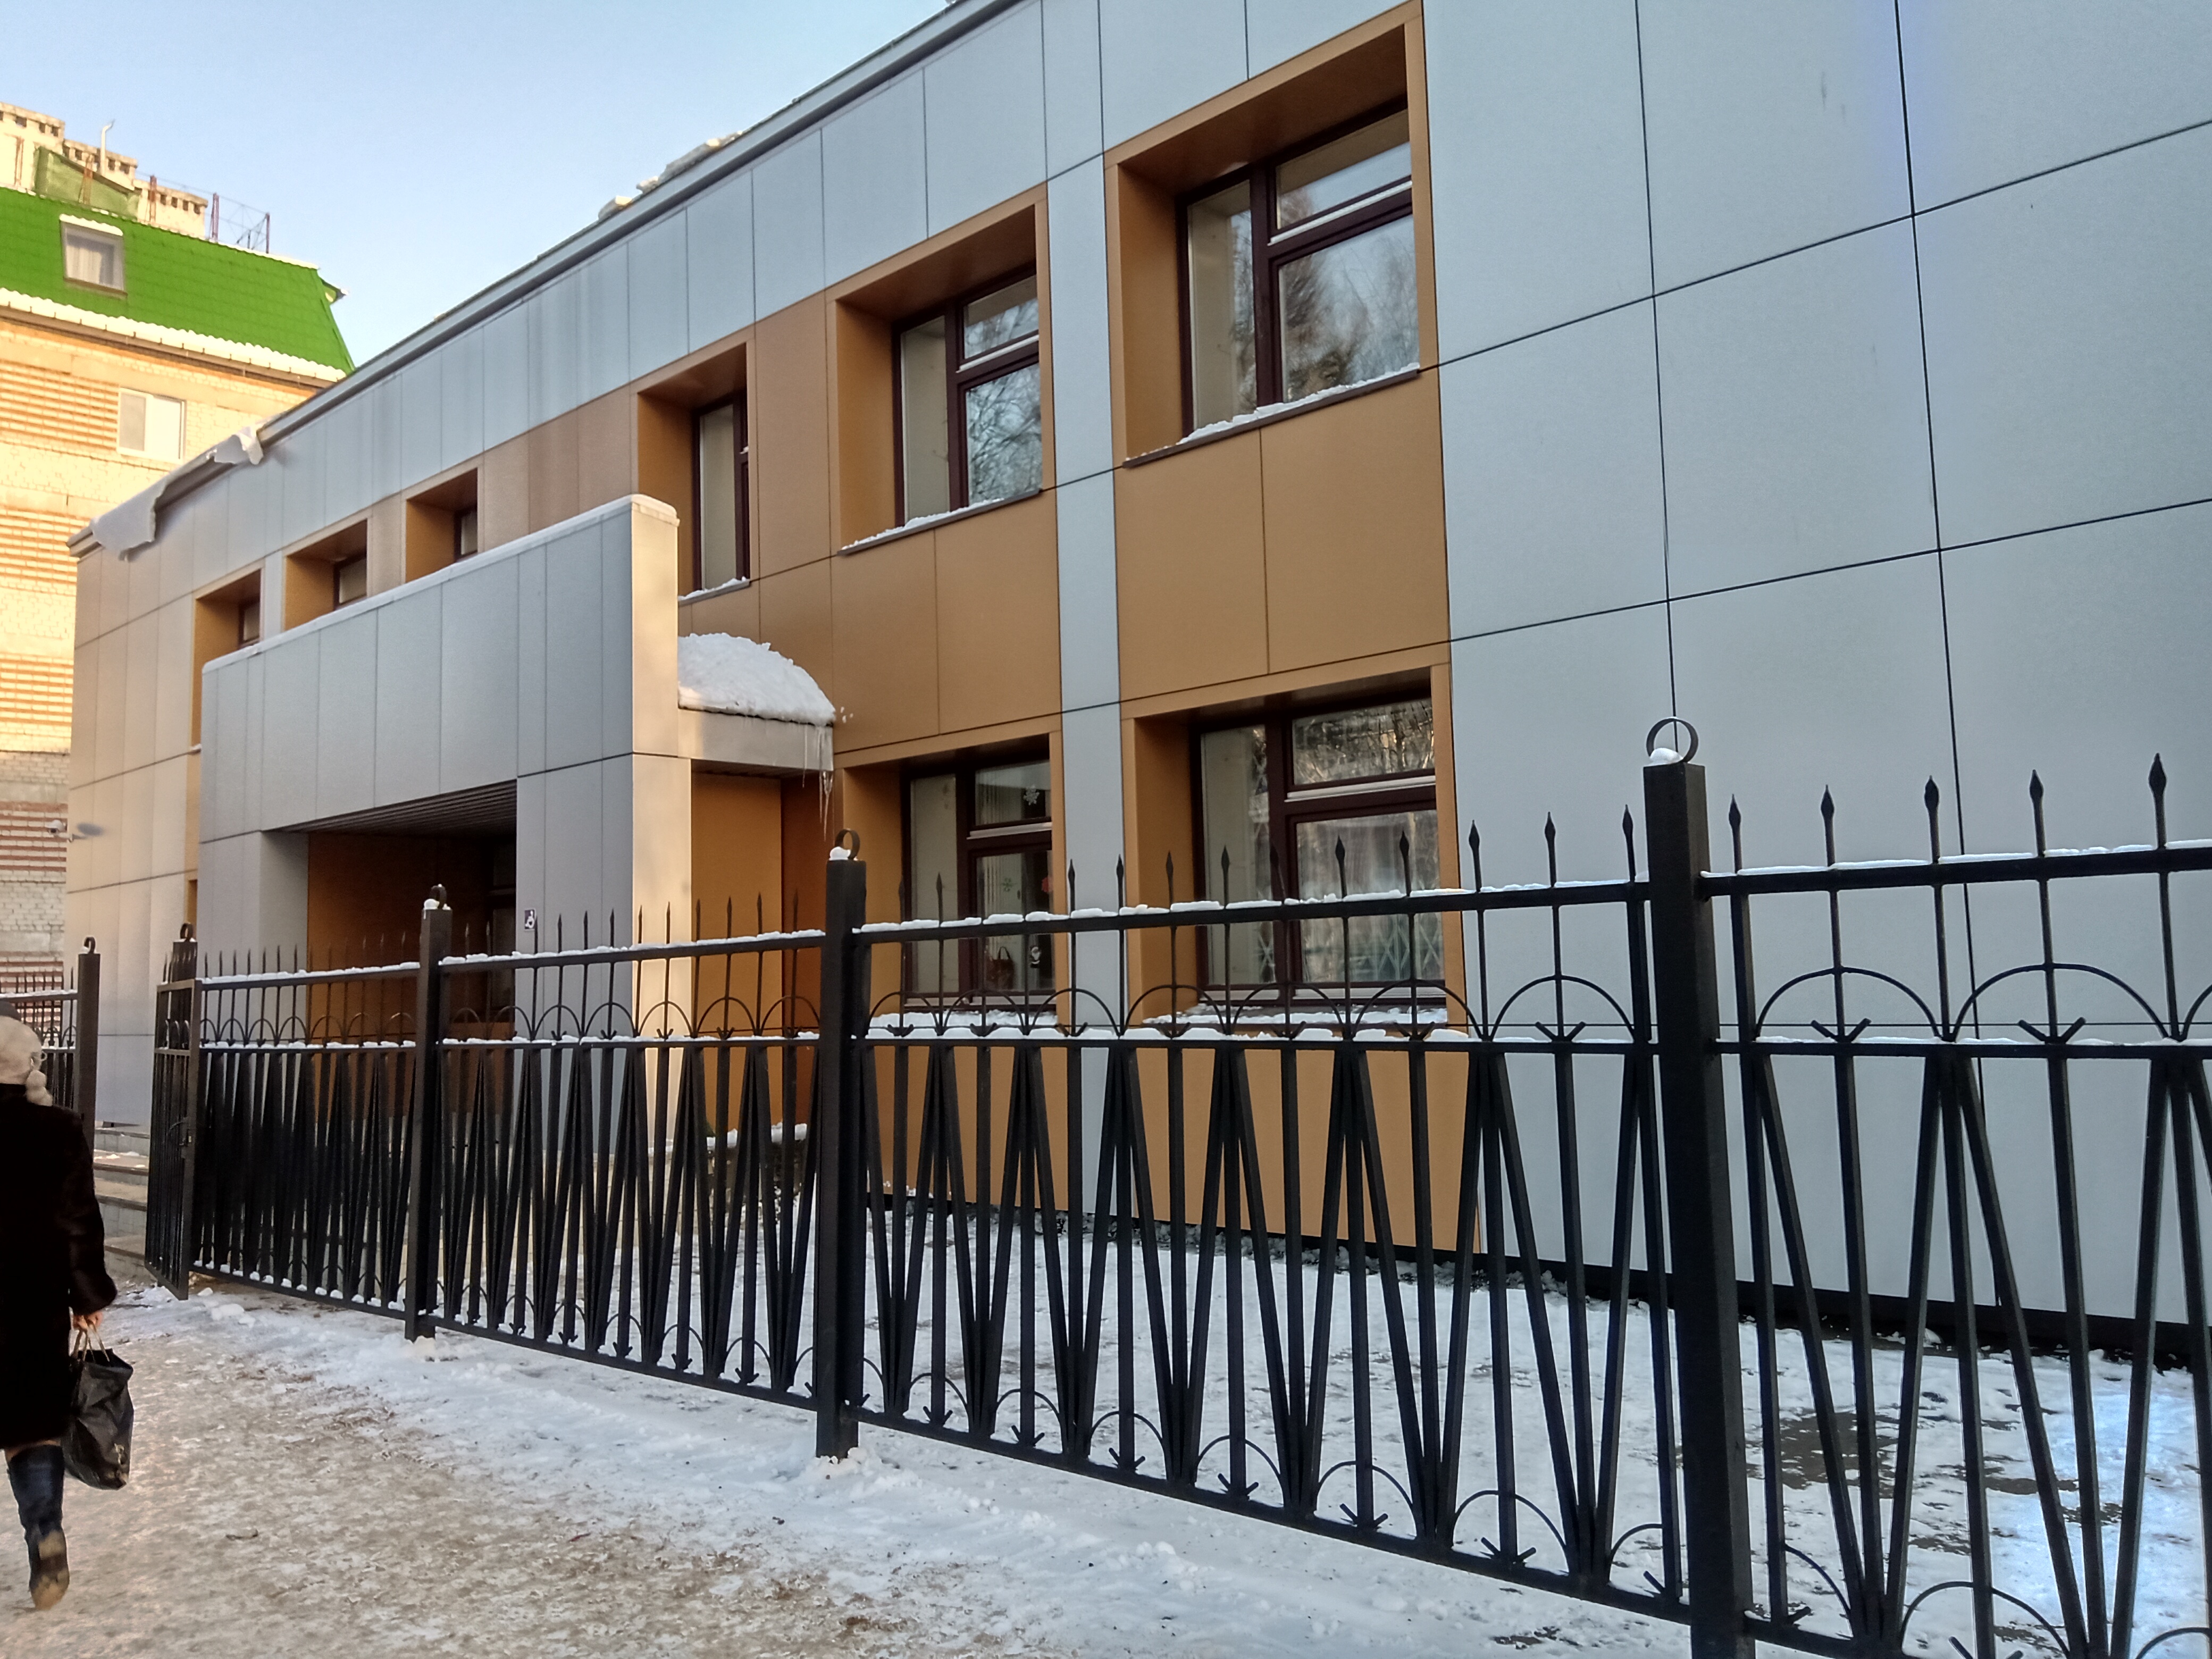 Йошкар-Олинский городской суд рассмотрит дело о нарушении прав при приватизации жилого помещения